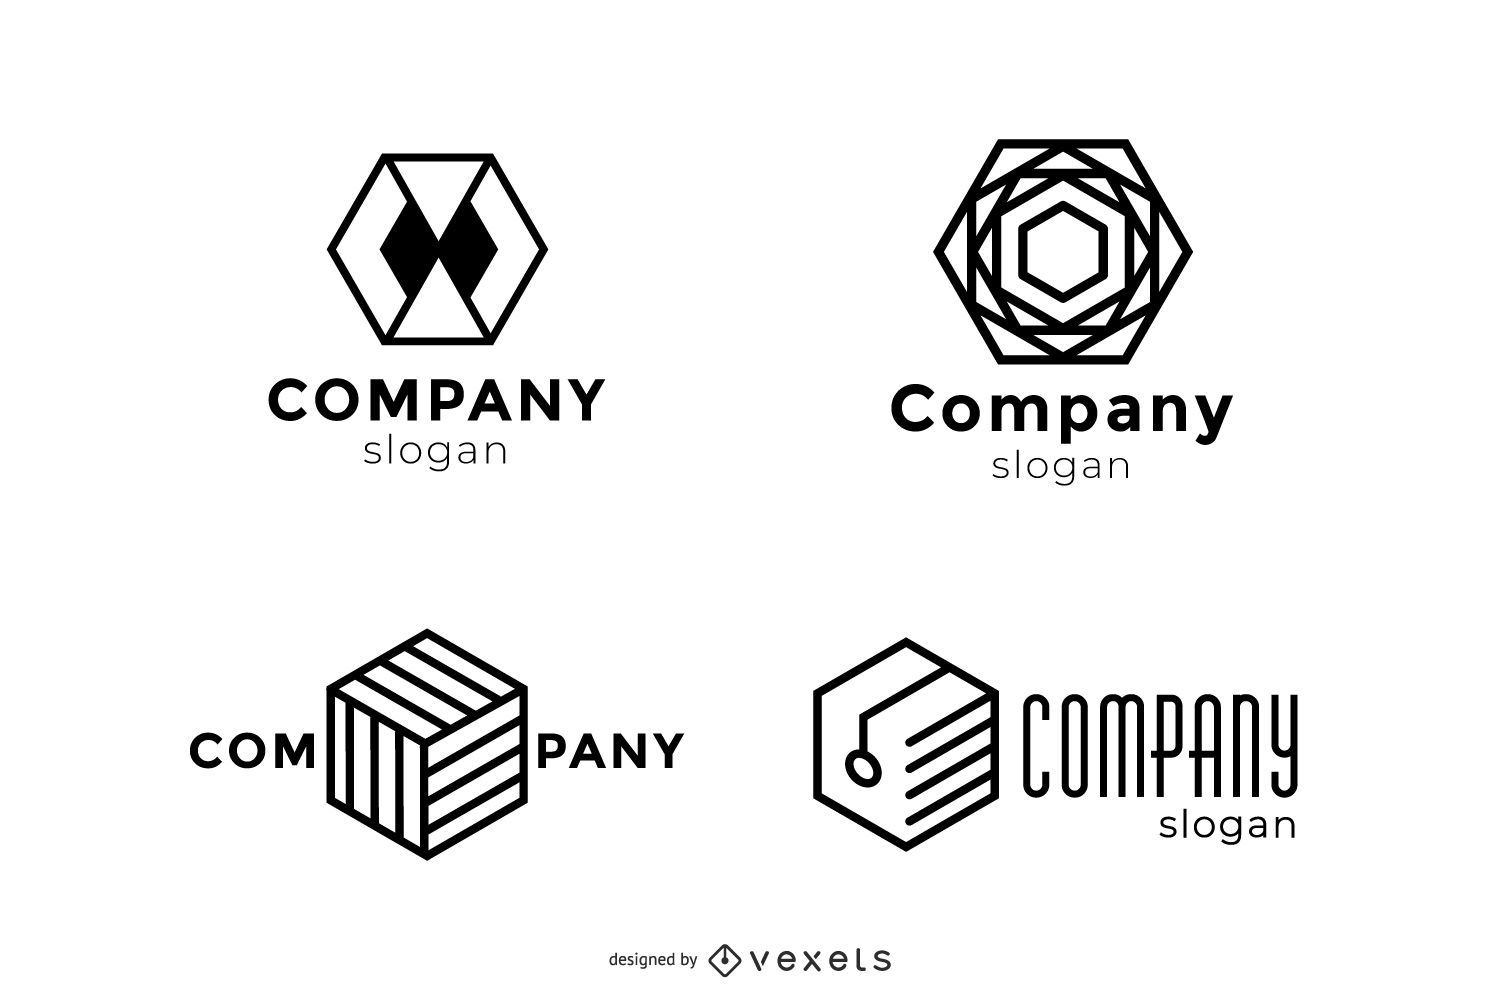 Descarga gratuita de vectores de logotipos Plantilla de logotipos gratuitos Logotipo gratuito Empresa Logotipo gratuito Negocio